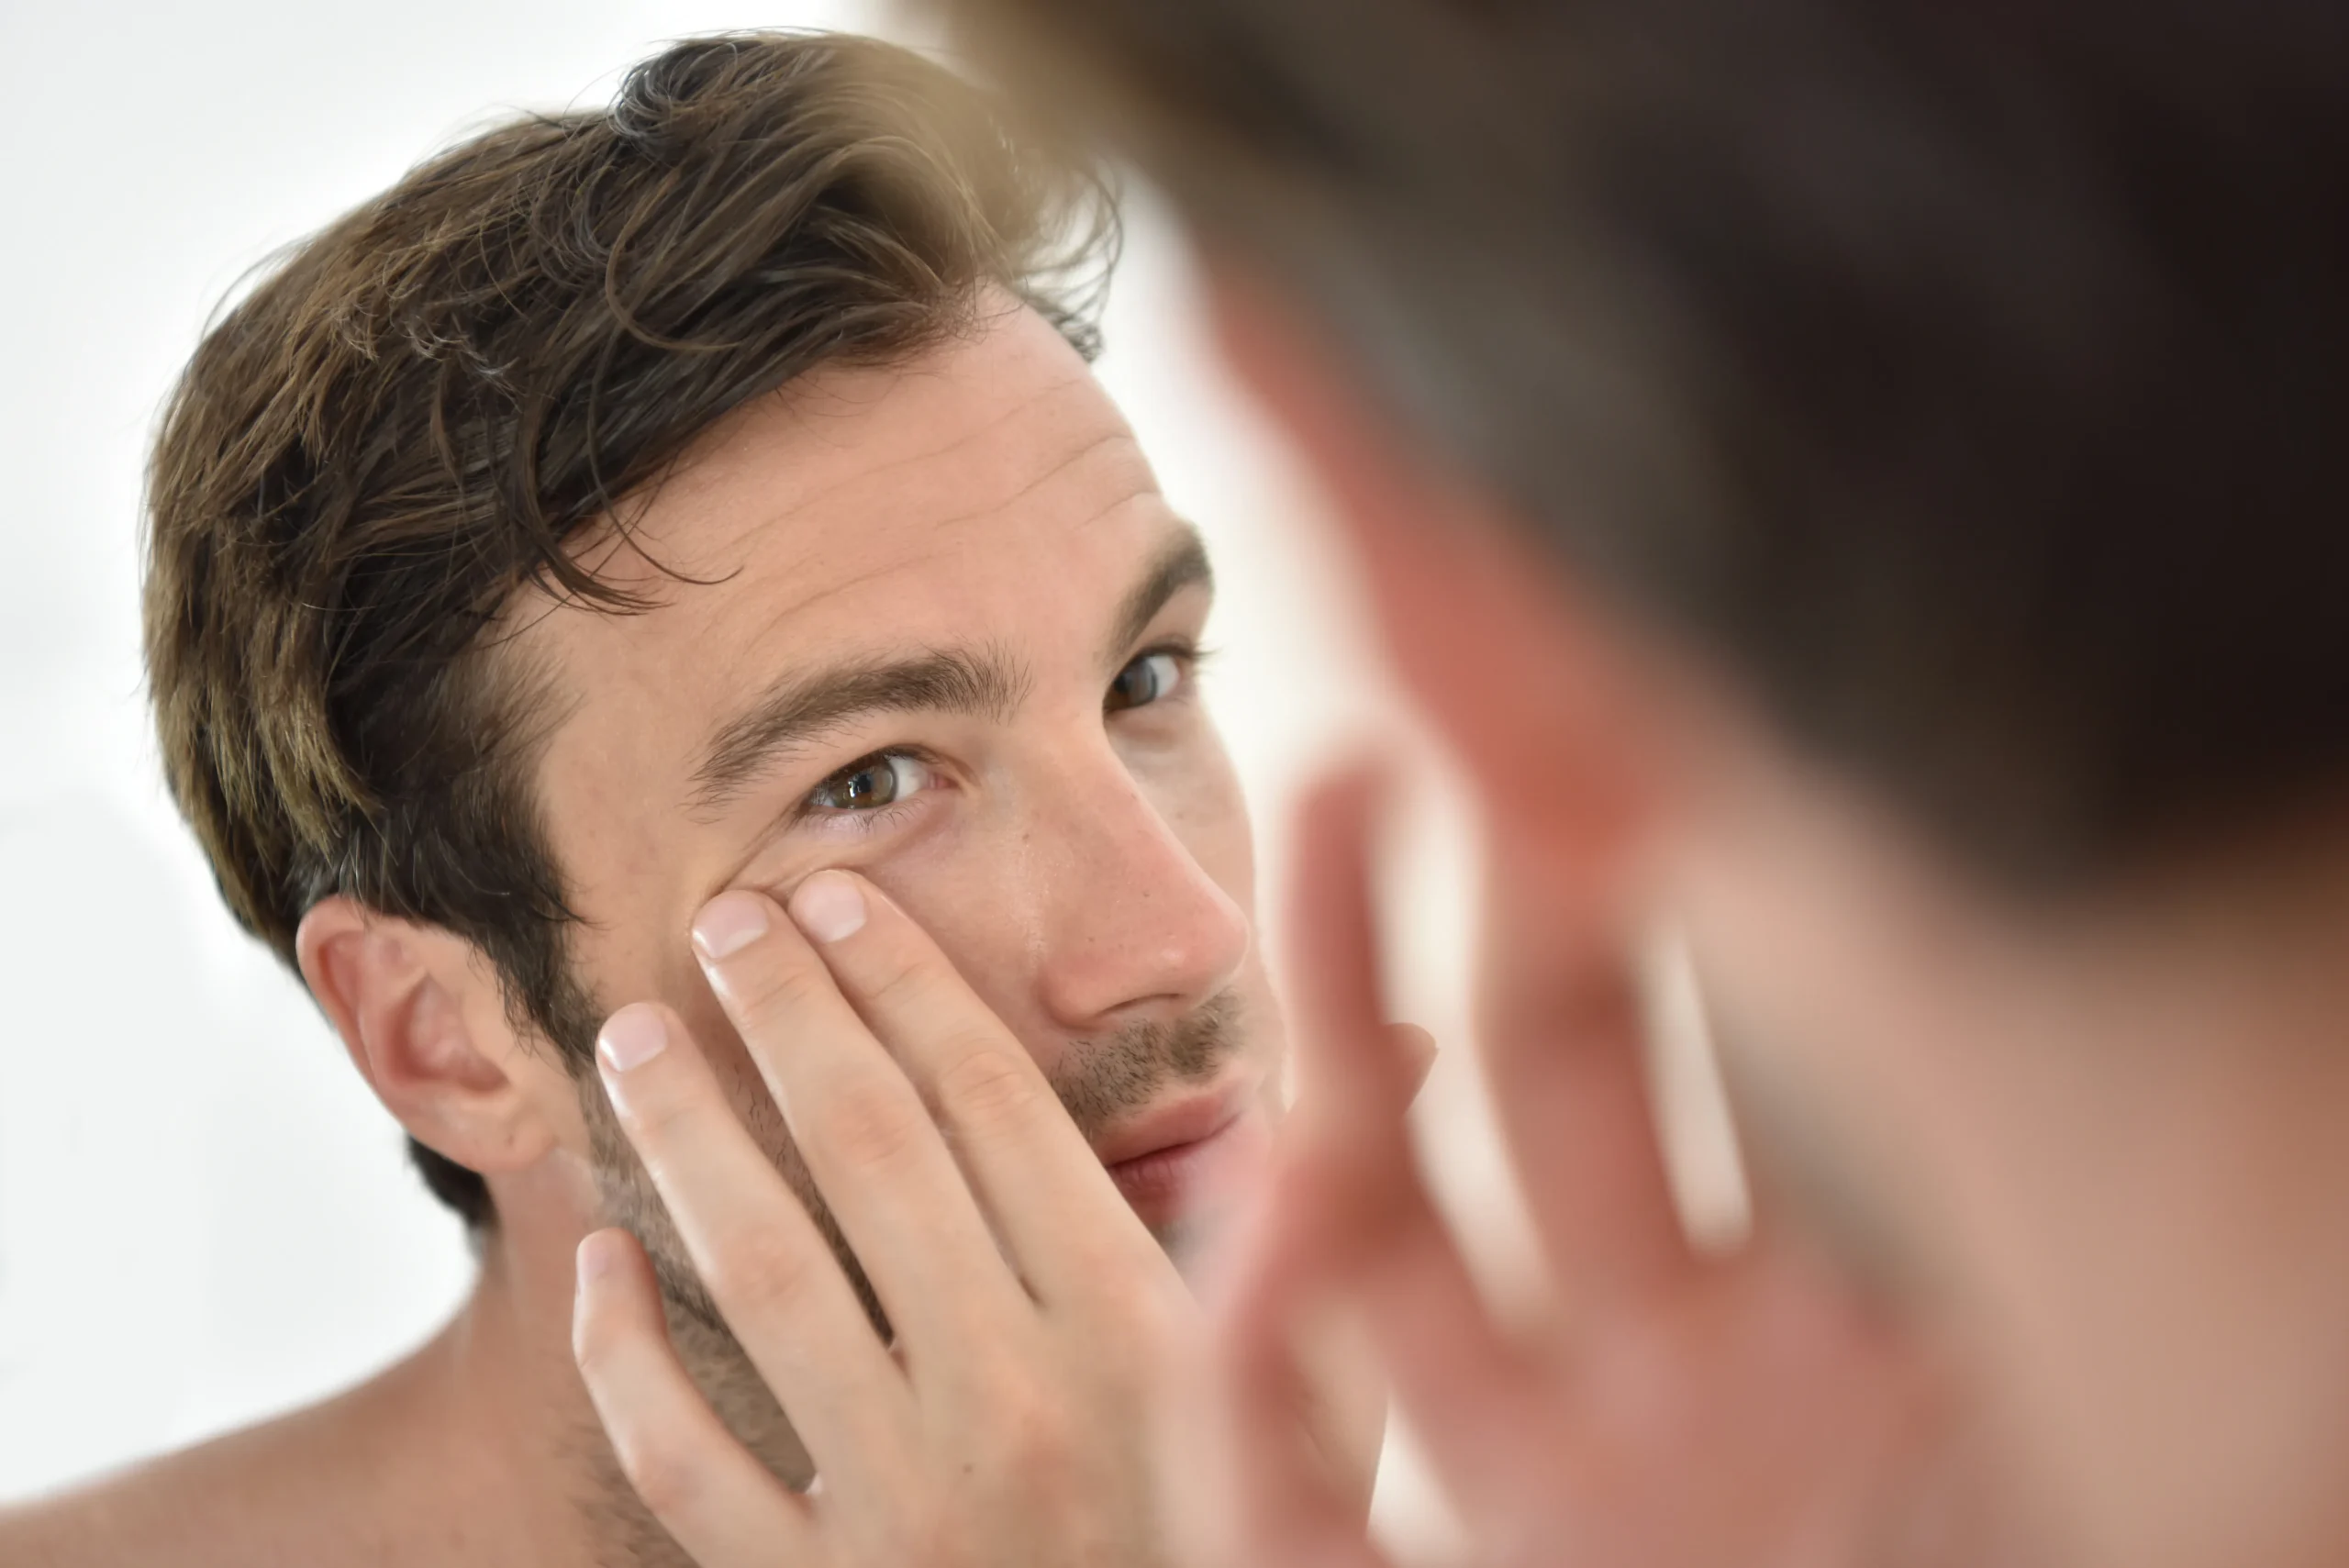 eyebag removal surery for men